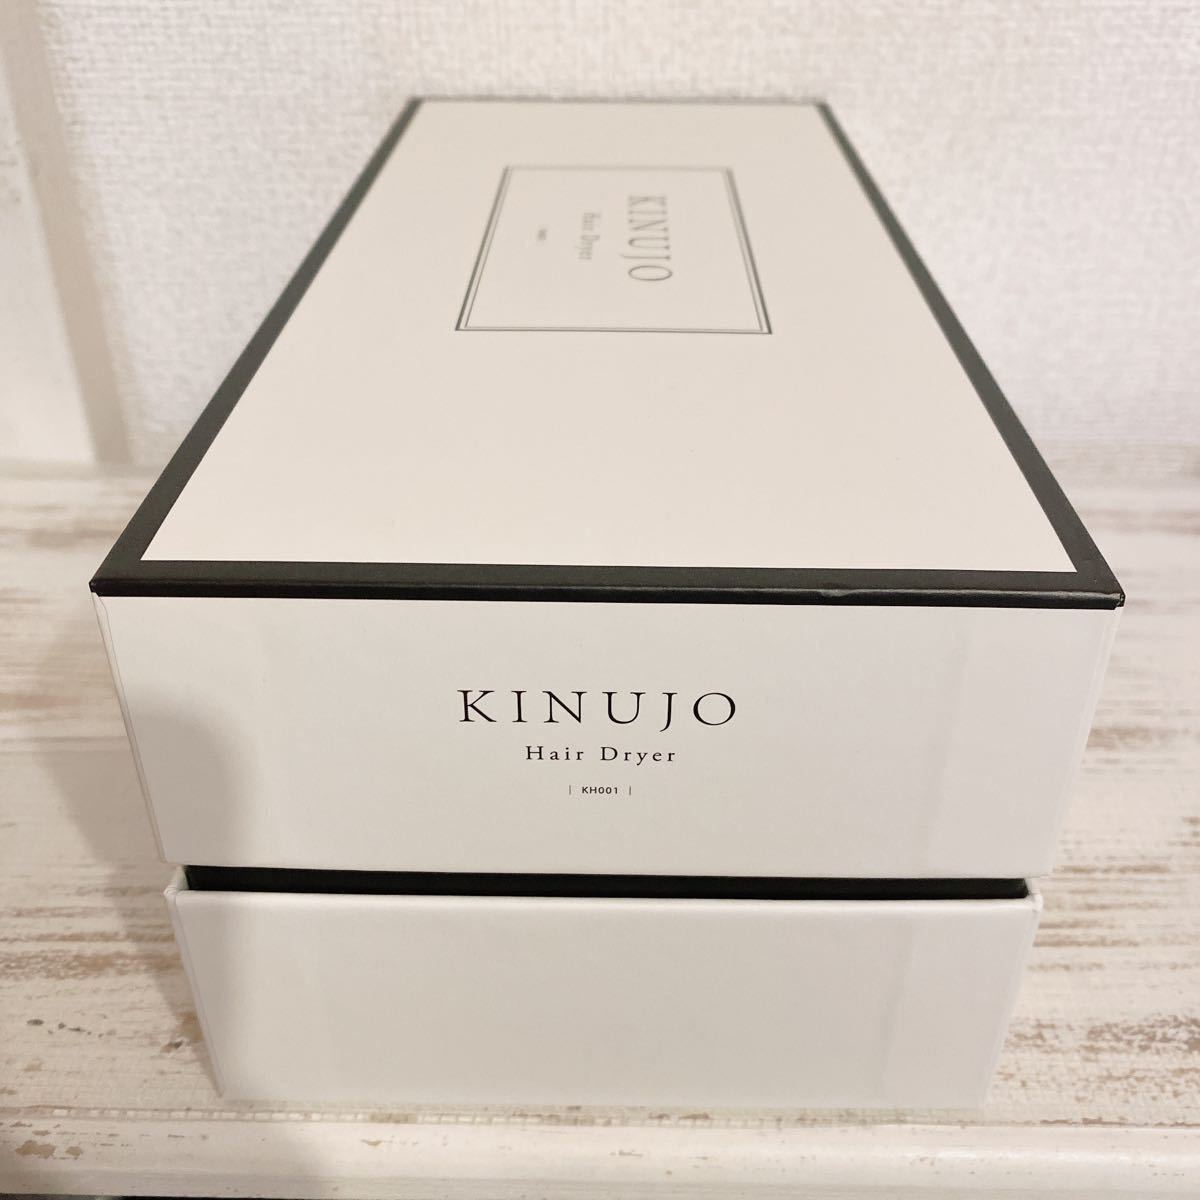 12160円 高級素材使用ブランド KINUJO ヘアードライヤー ホワイト KH001